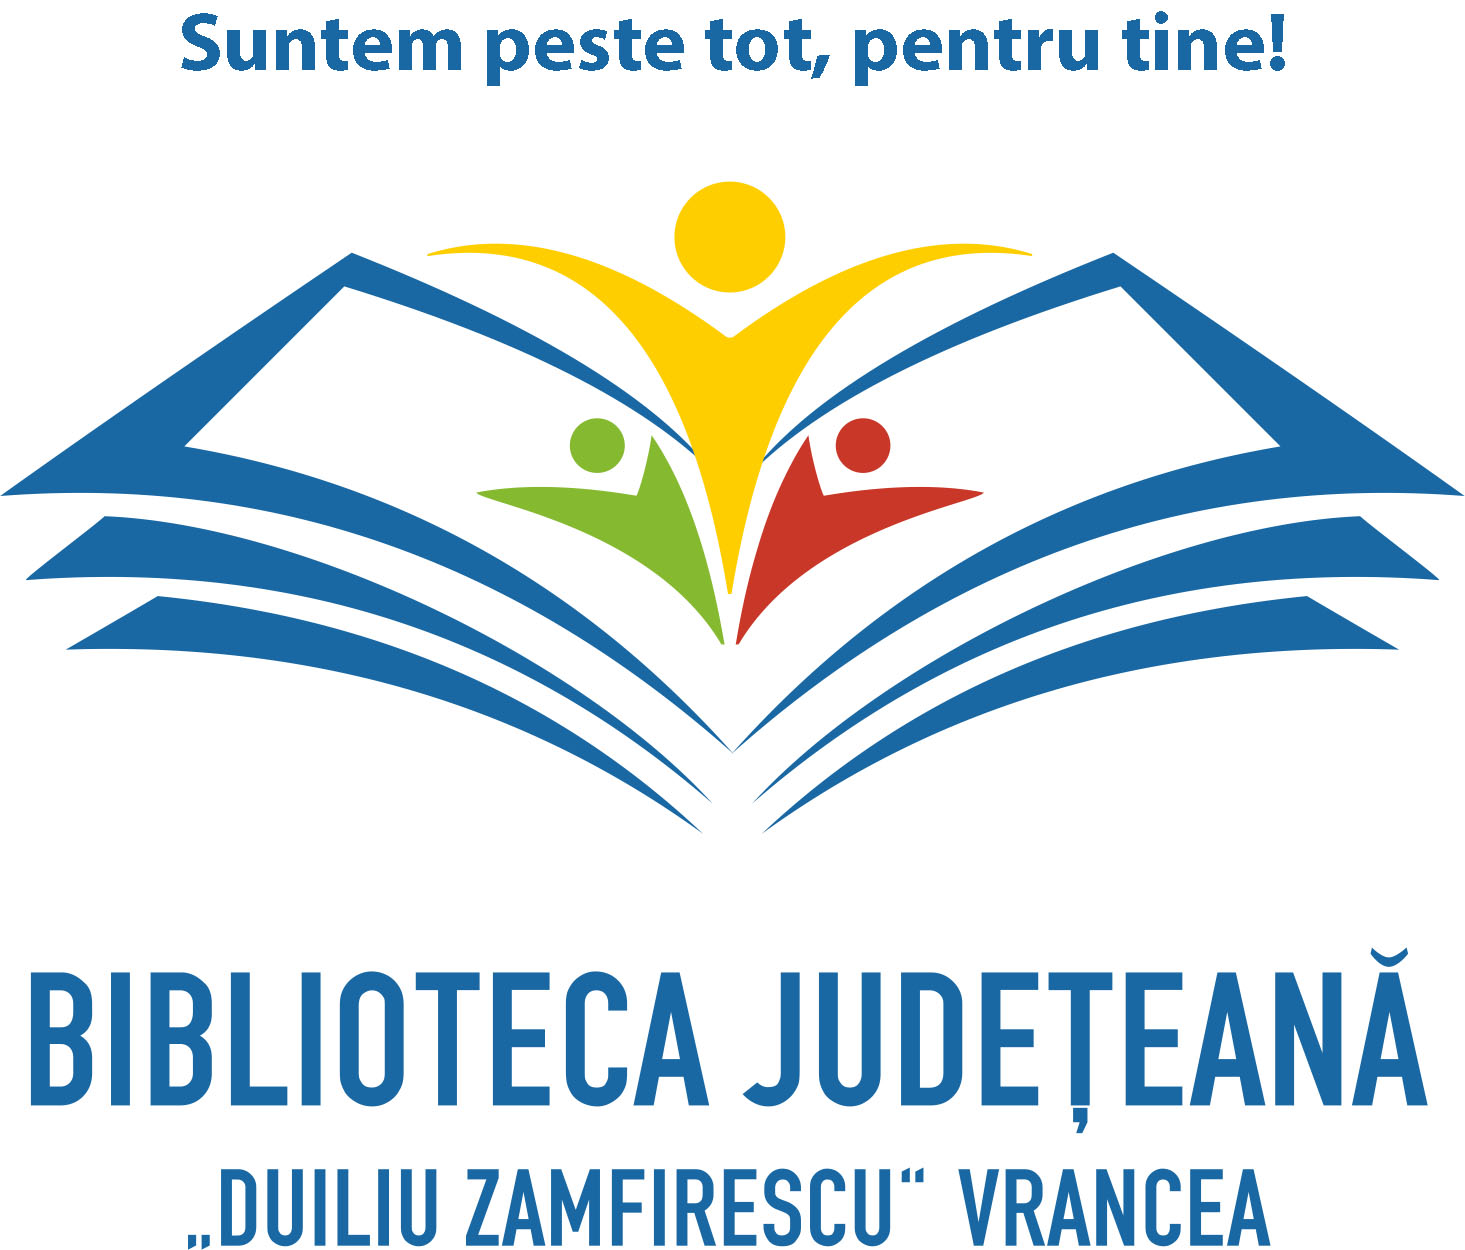 Run bush Infinity Anul Colaboratorilor și Partenerilor Bibliotecii - Premii naționale  obținute de Biblioteca Județeană Vrancea - Biblioteca Judeteana Vrancea